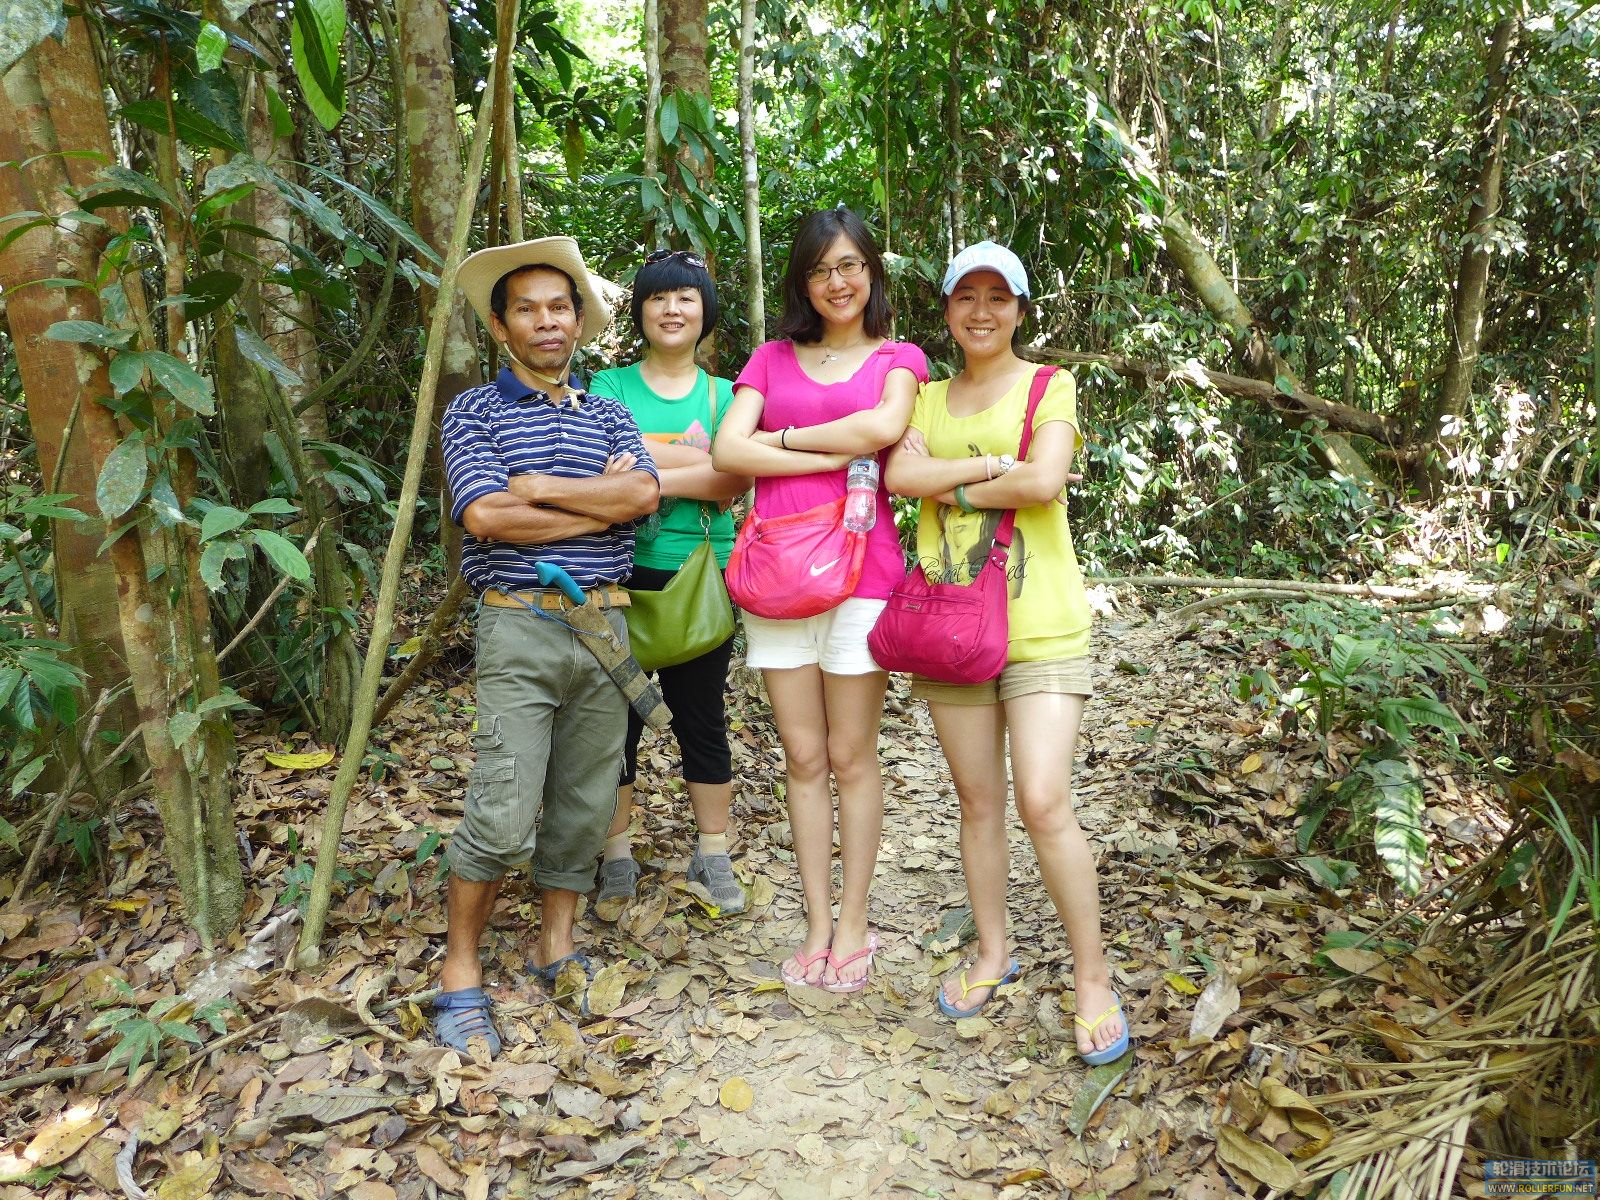 热带雨林徒步